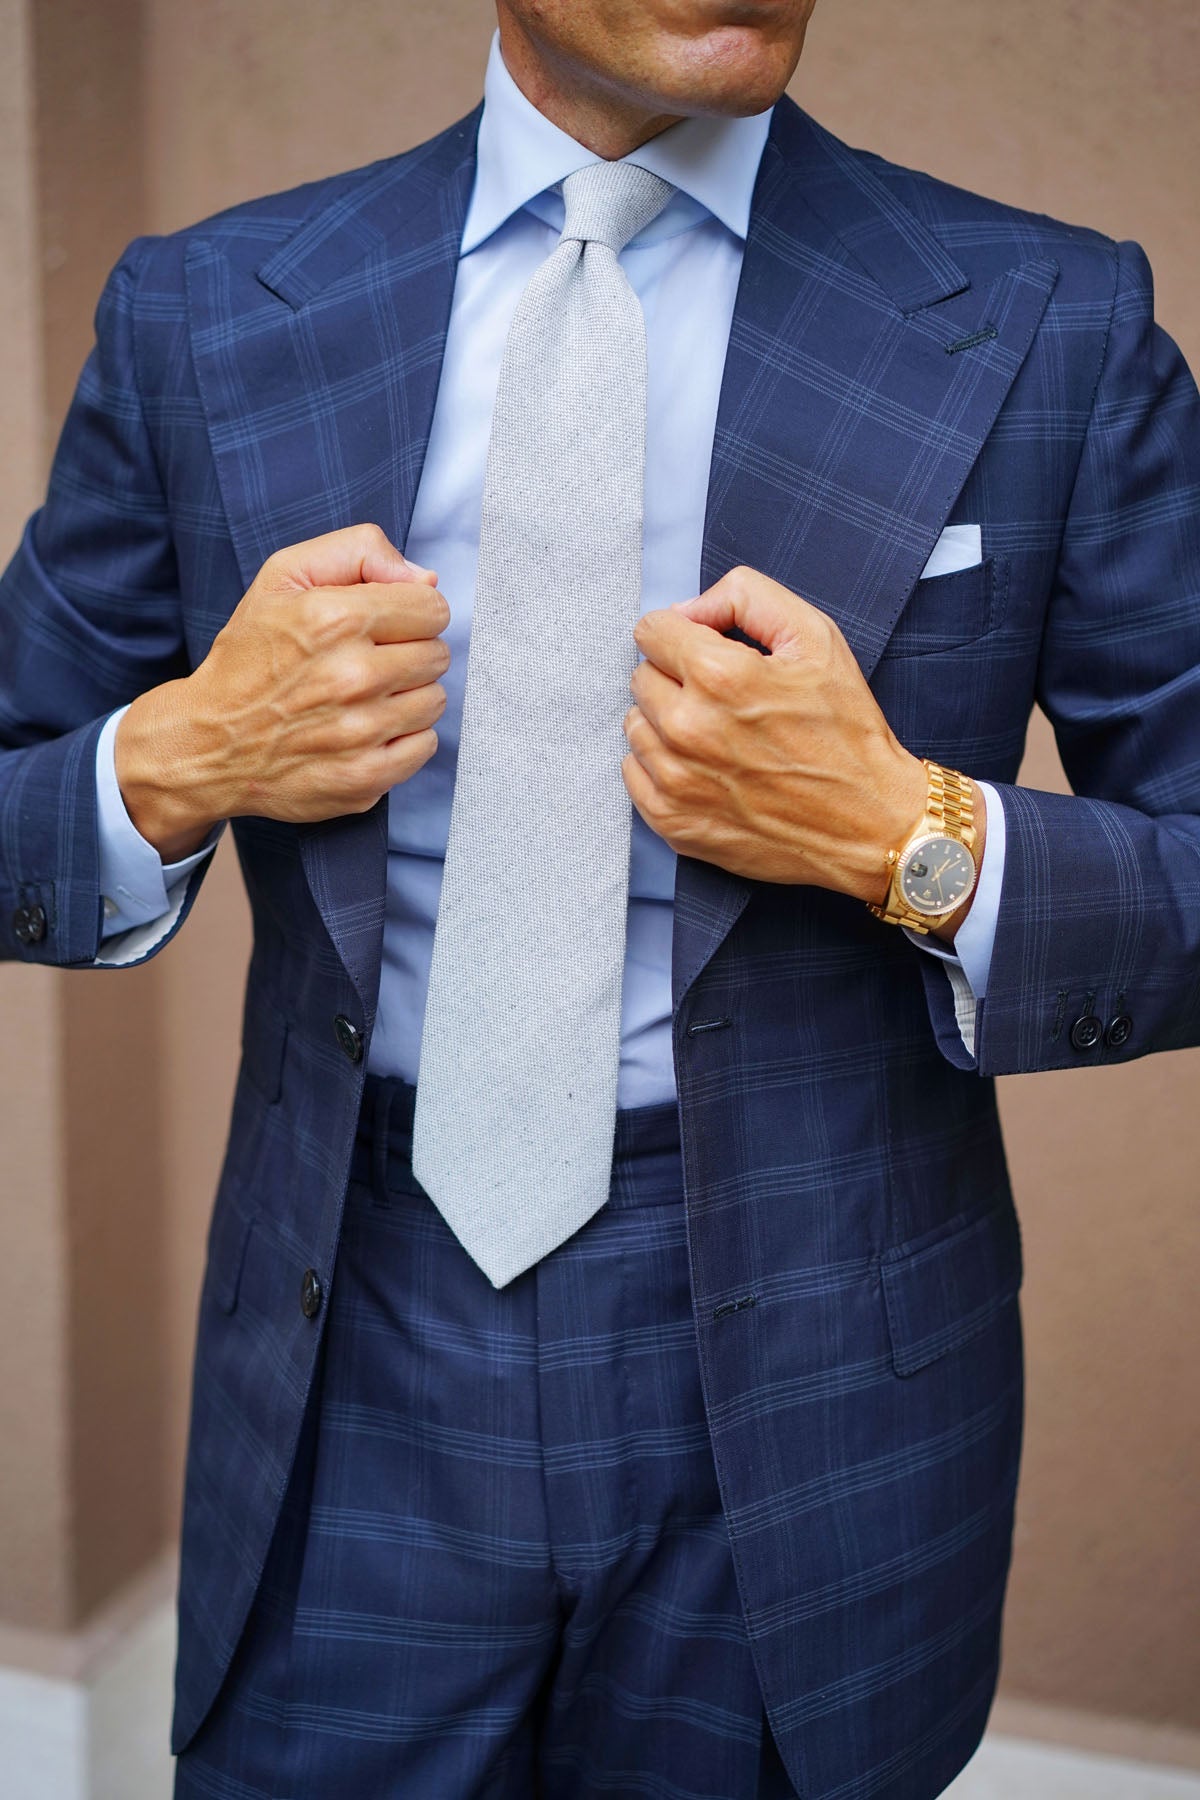 Dry Grey Donegal Linen Tie | Light Gray Ties | Best Necktie for Men AU ...